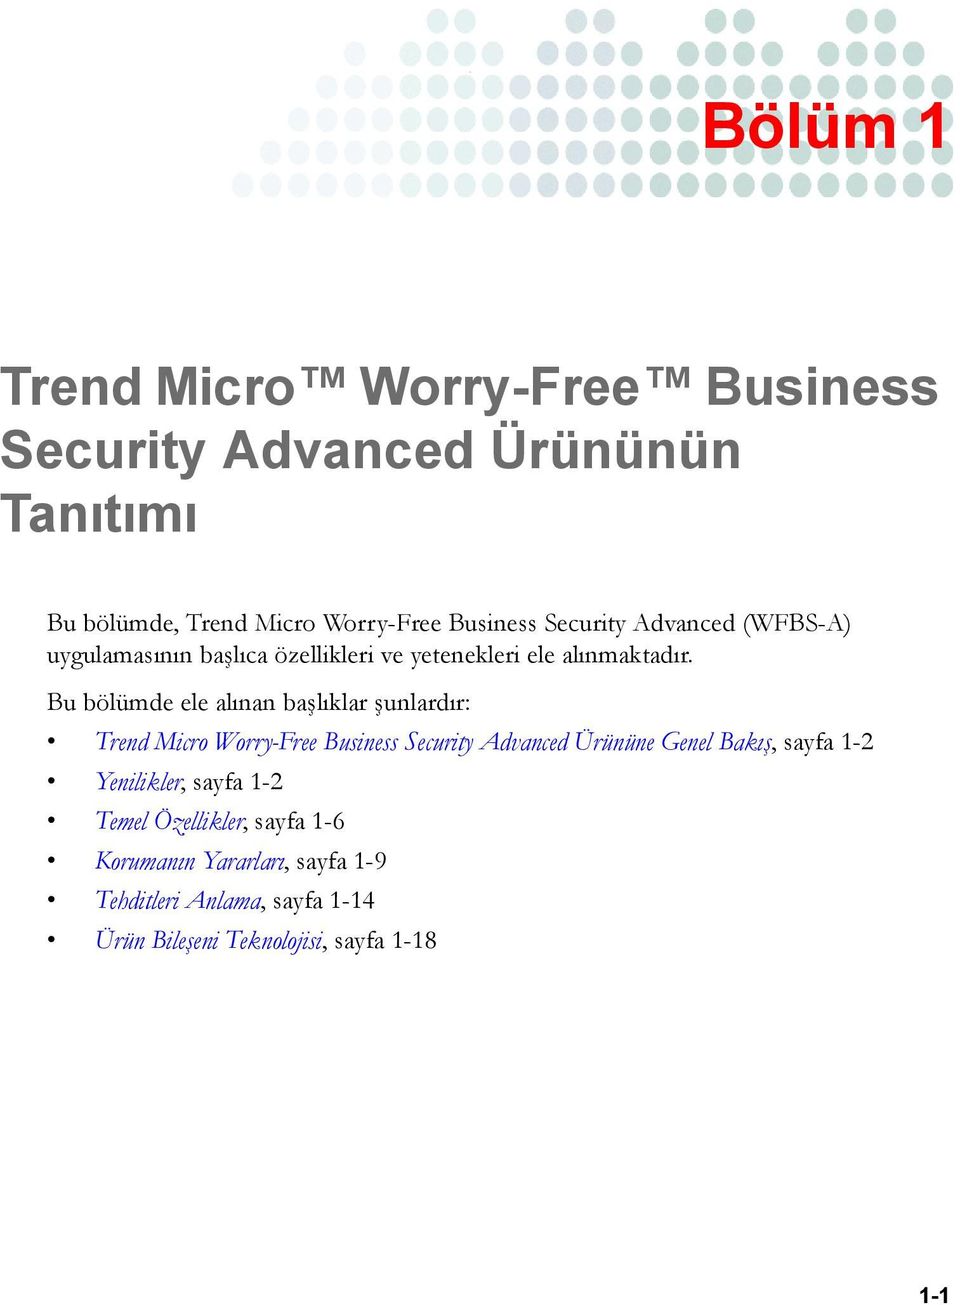 Bu bölümde ele alınan başlıklar şunlardır: Trend Micro Worry-Free Business Security Advanced Ürününe Genel Bakış, sayfa